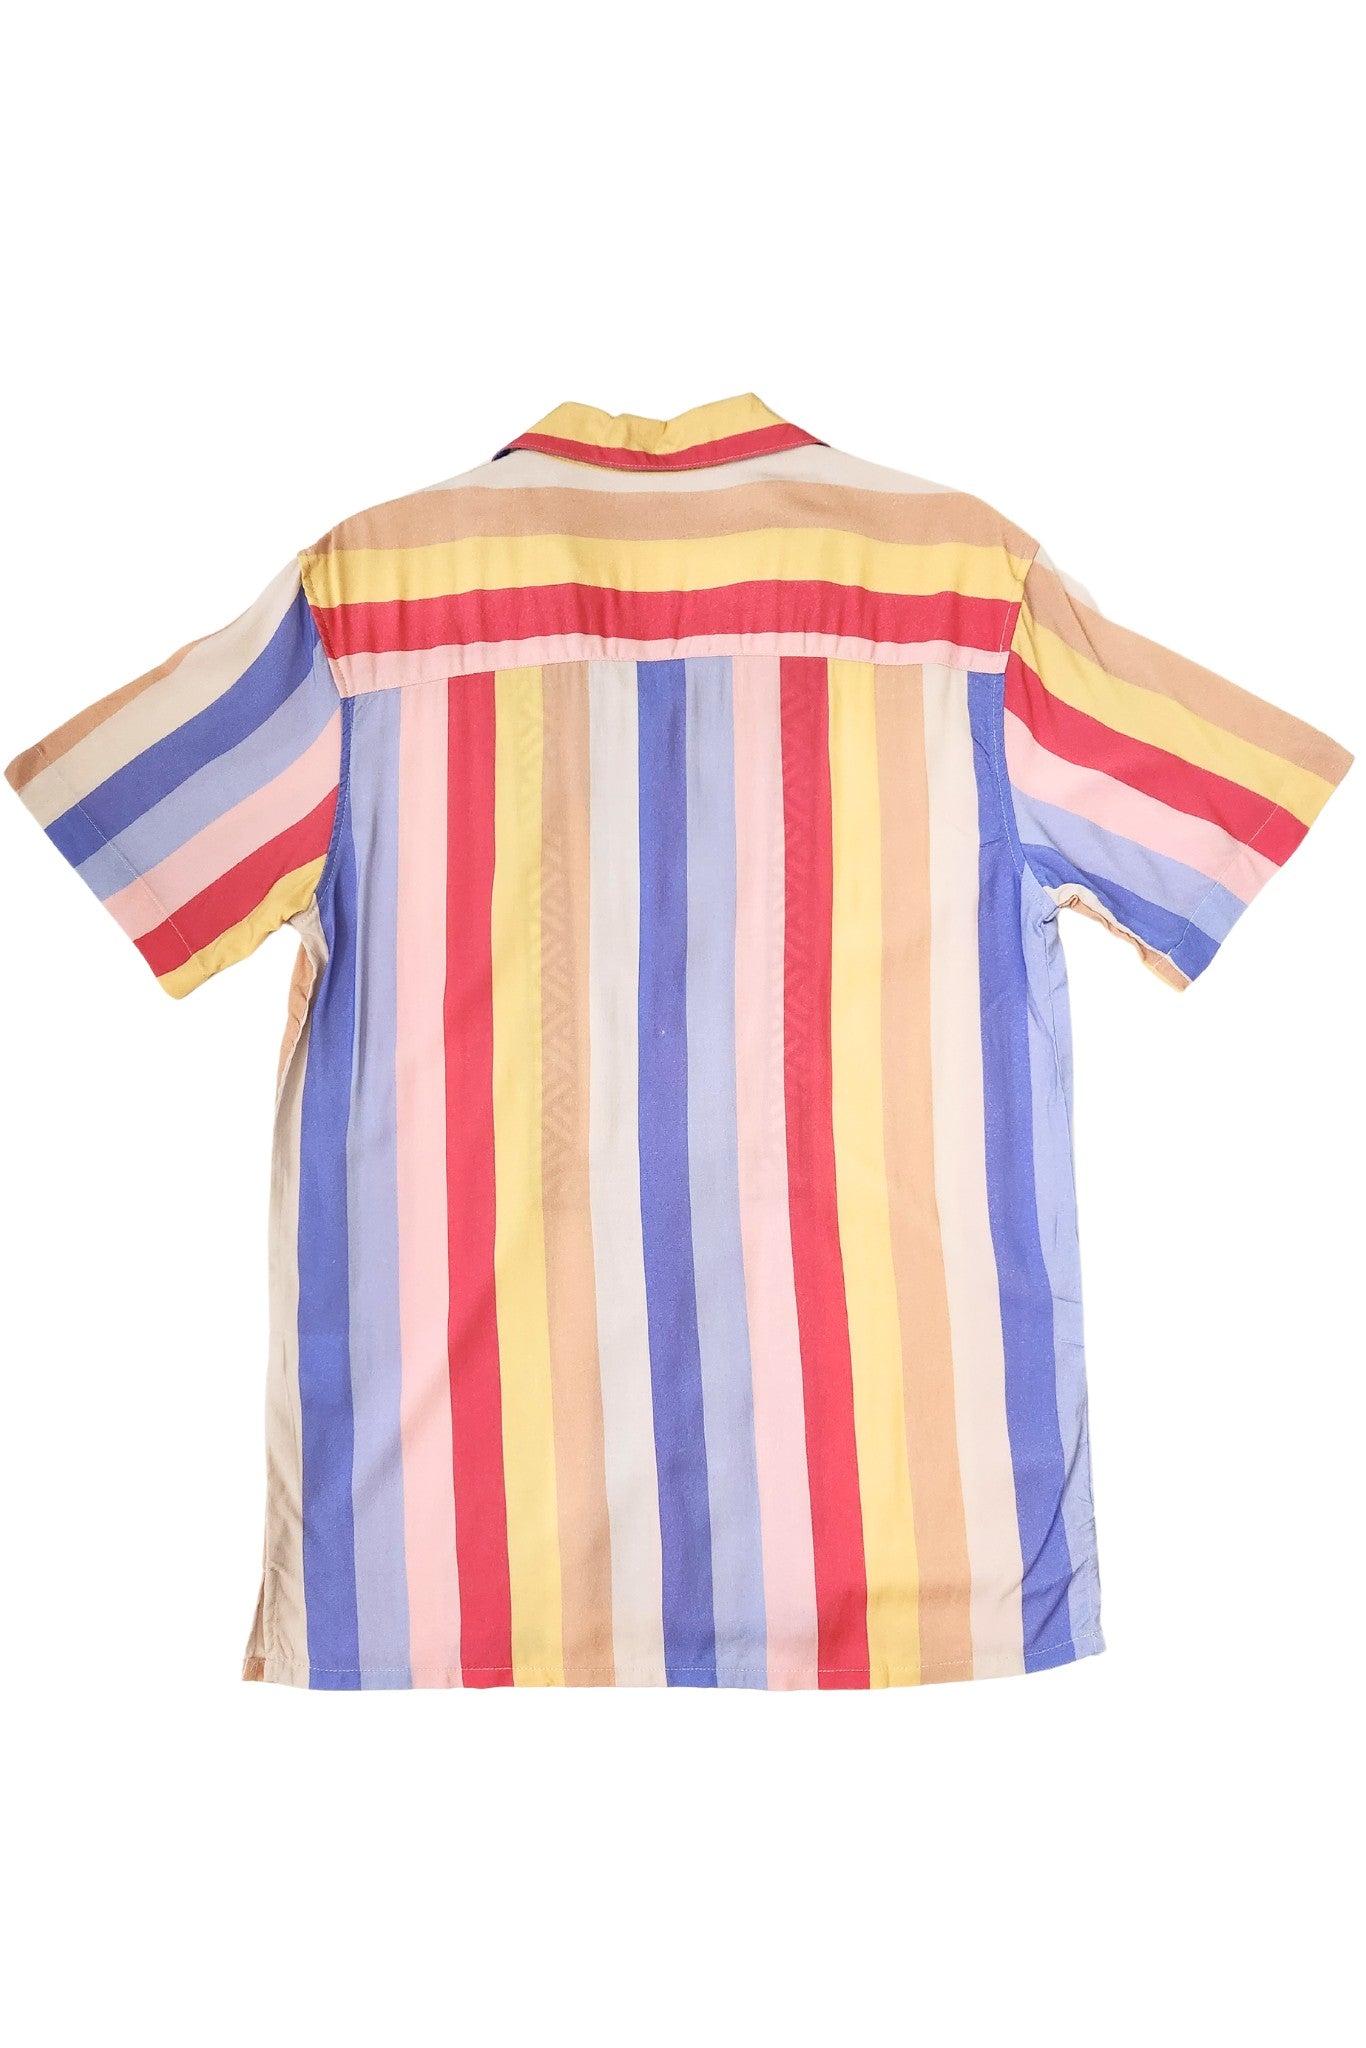 Barong Warehouse - MH05 - Hawaiian Barong Stripes - LIMITED - Short-Sleeve Polo Barong Tagalog